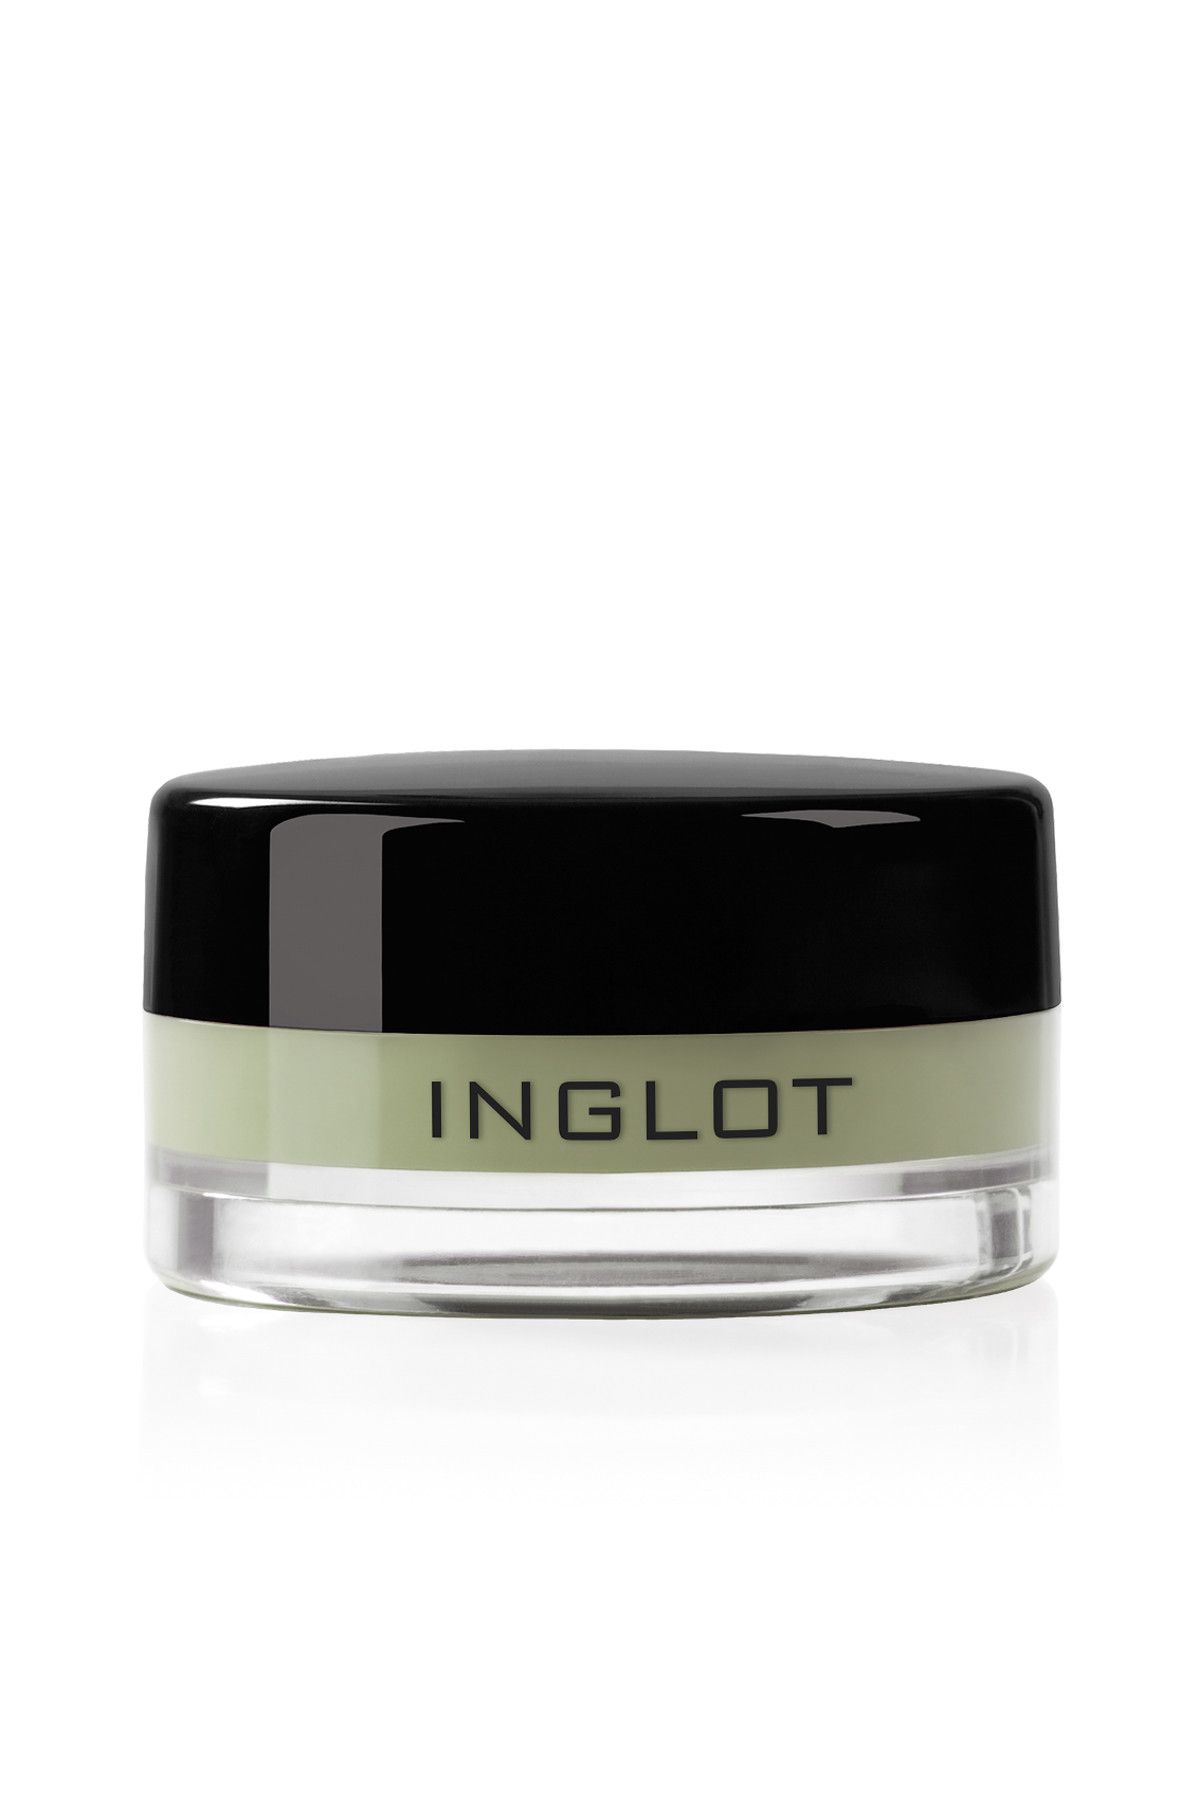 Inglot Krem Kapatıcı - Cream Concealer 60 5.5 g 5907587179608